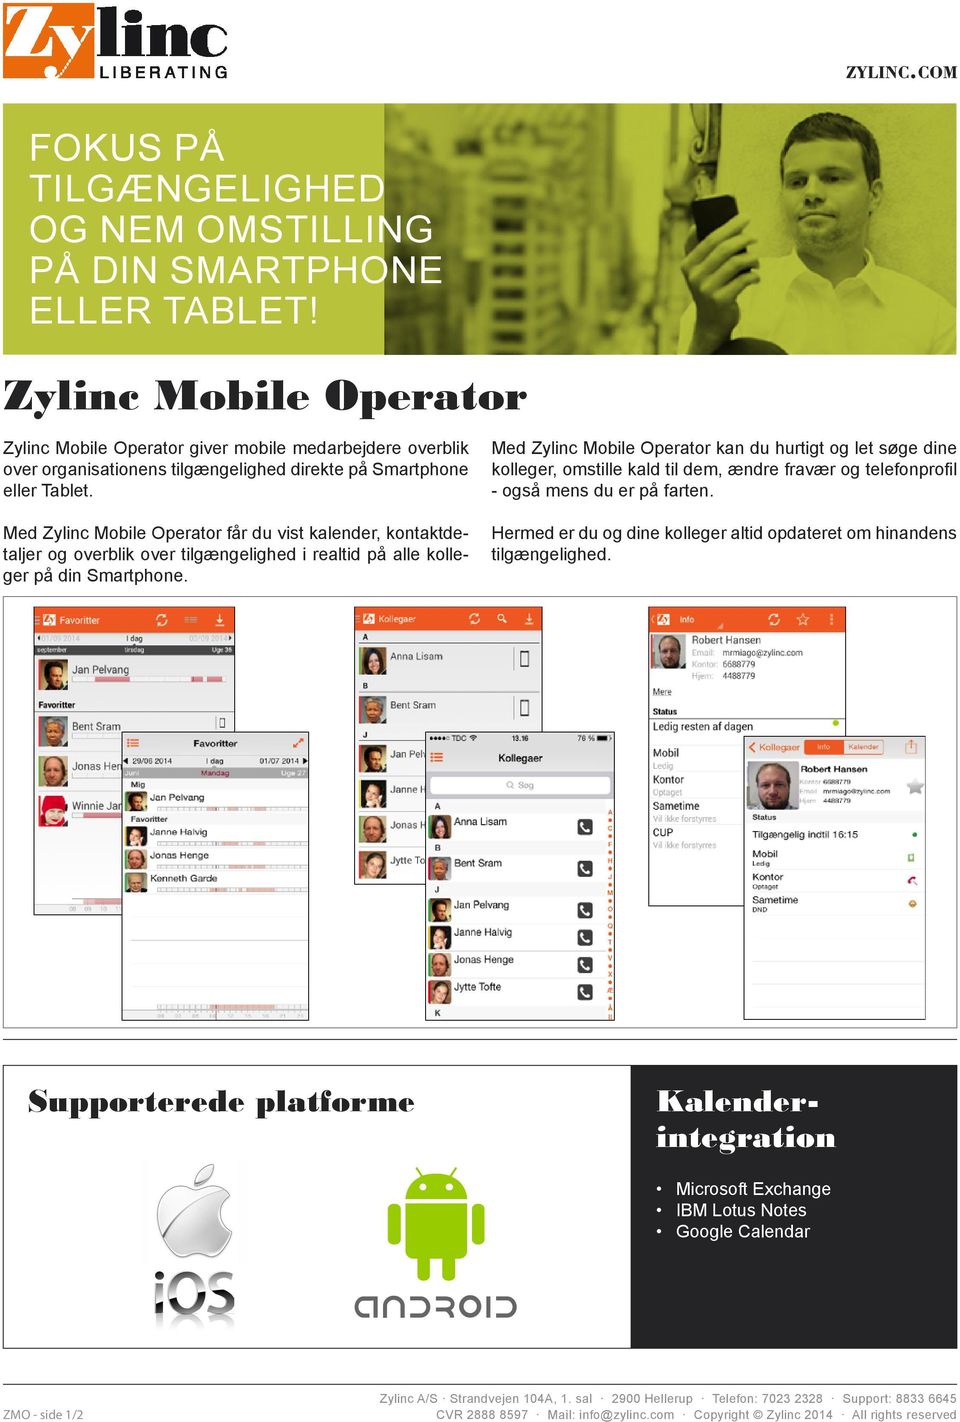 Med Zylinc Mobile Operator får du vist kalender, kontaktdetaljer og overblik over tilgængelighed i realtid på alle kolleger på din Smartphone.